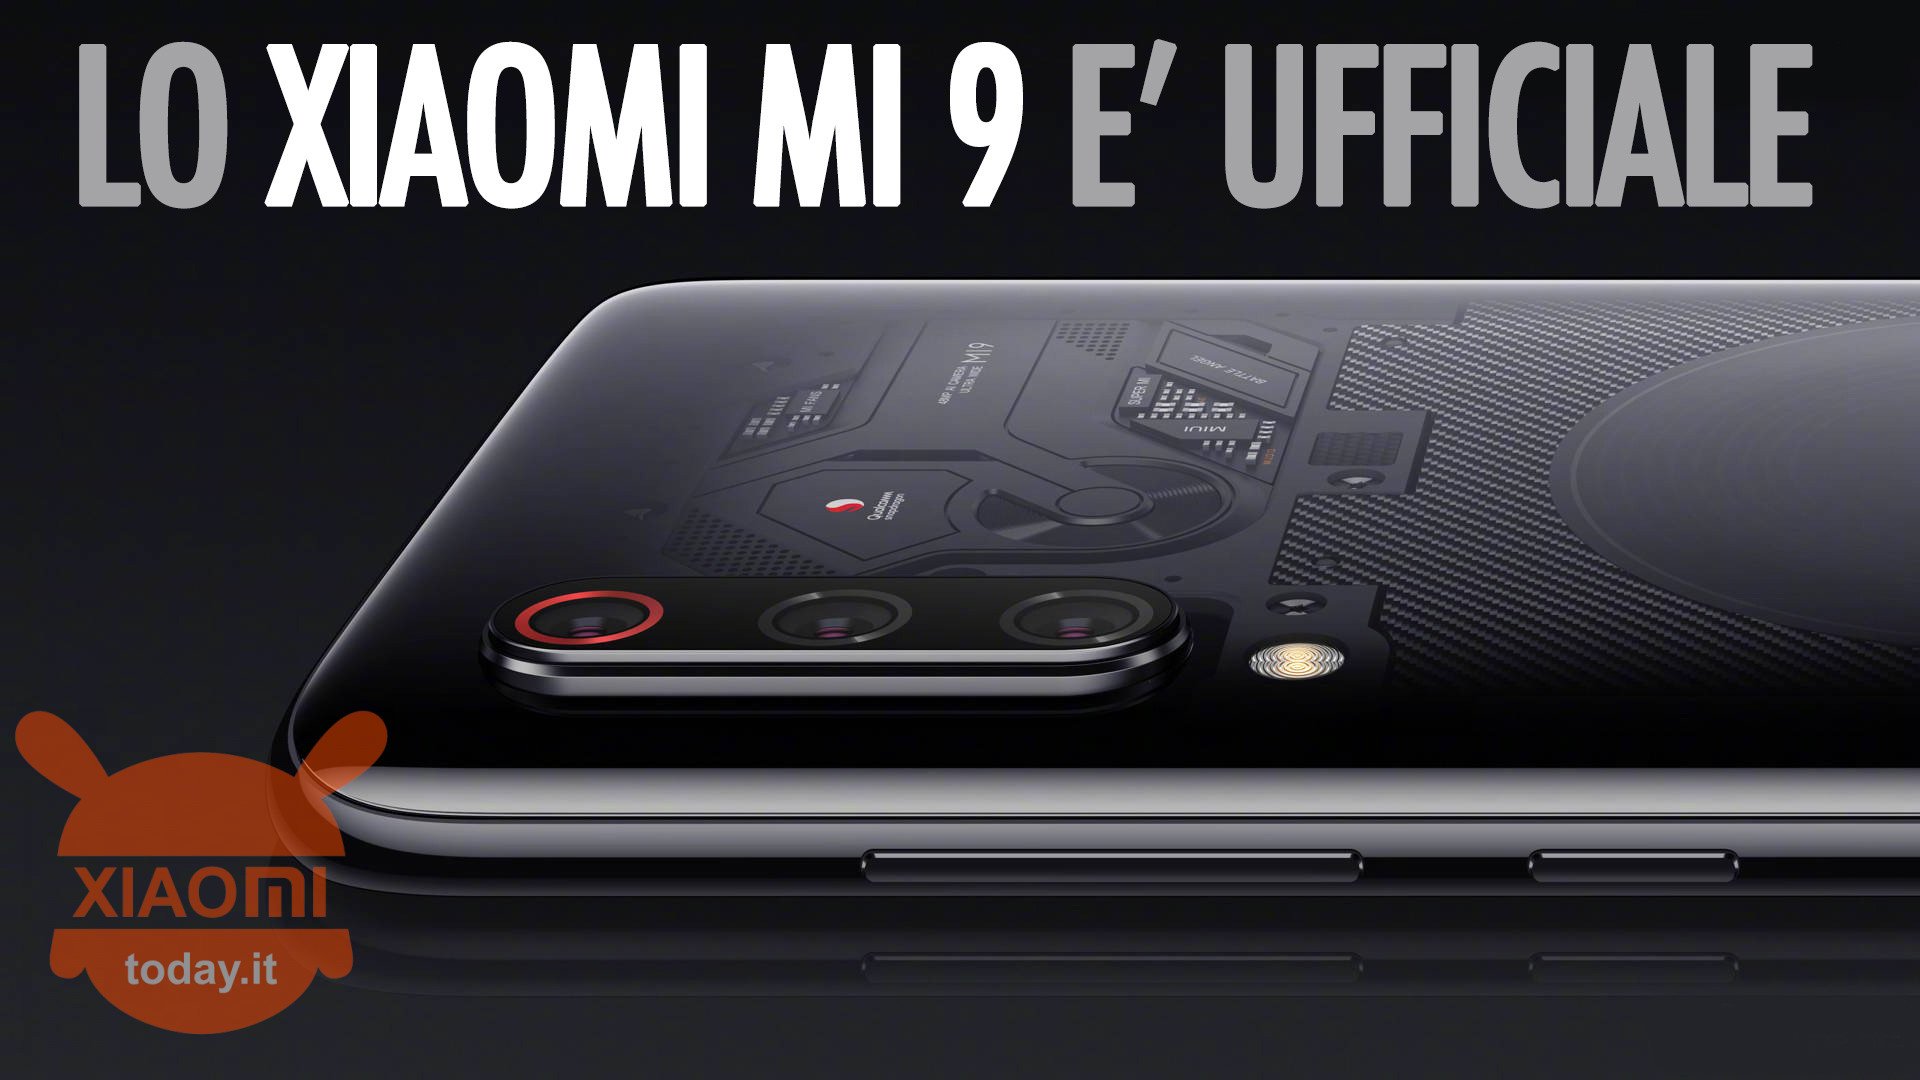 Especificacions tècniques del Xiaomi Mi 9